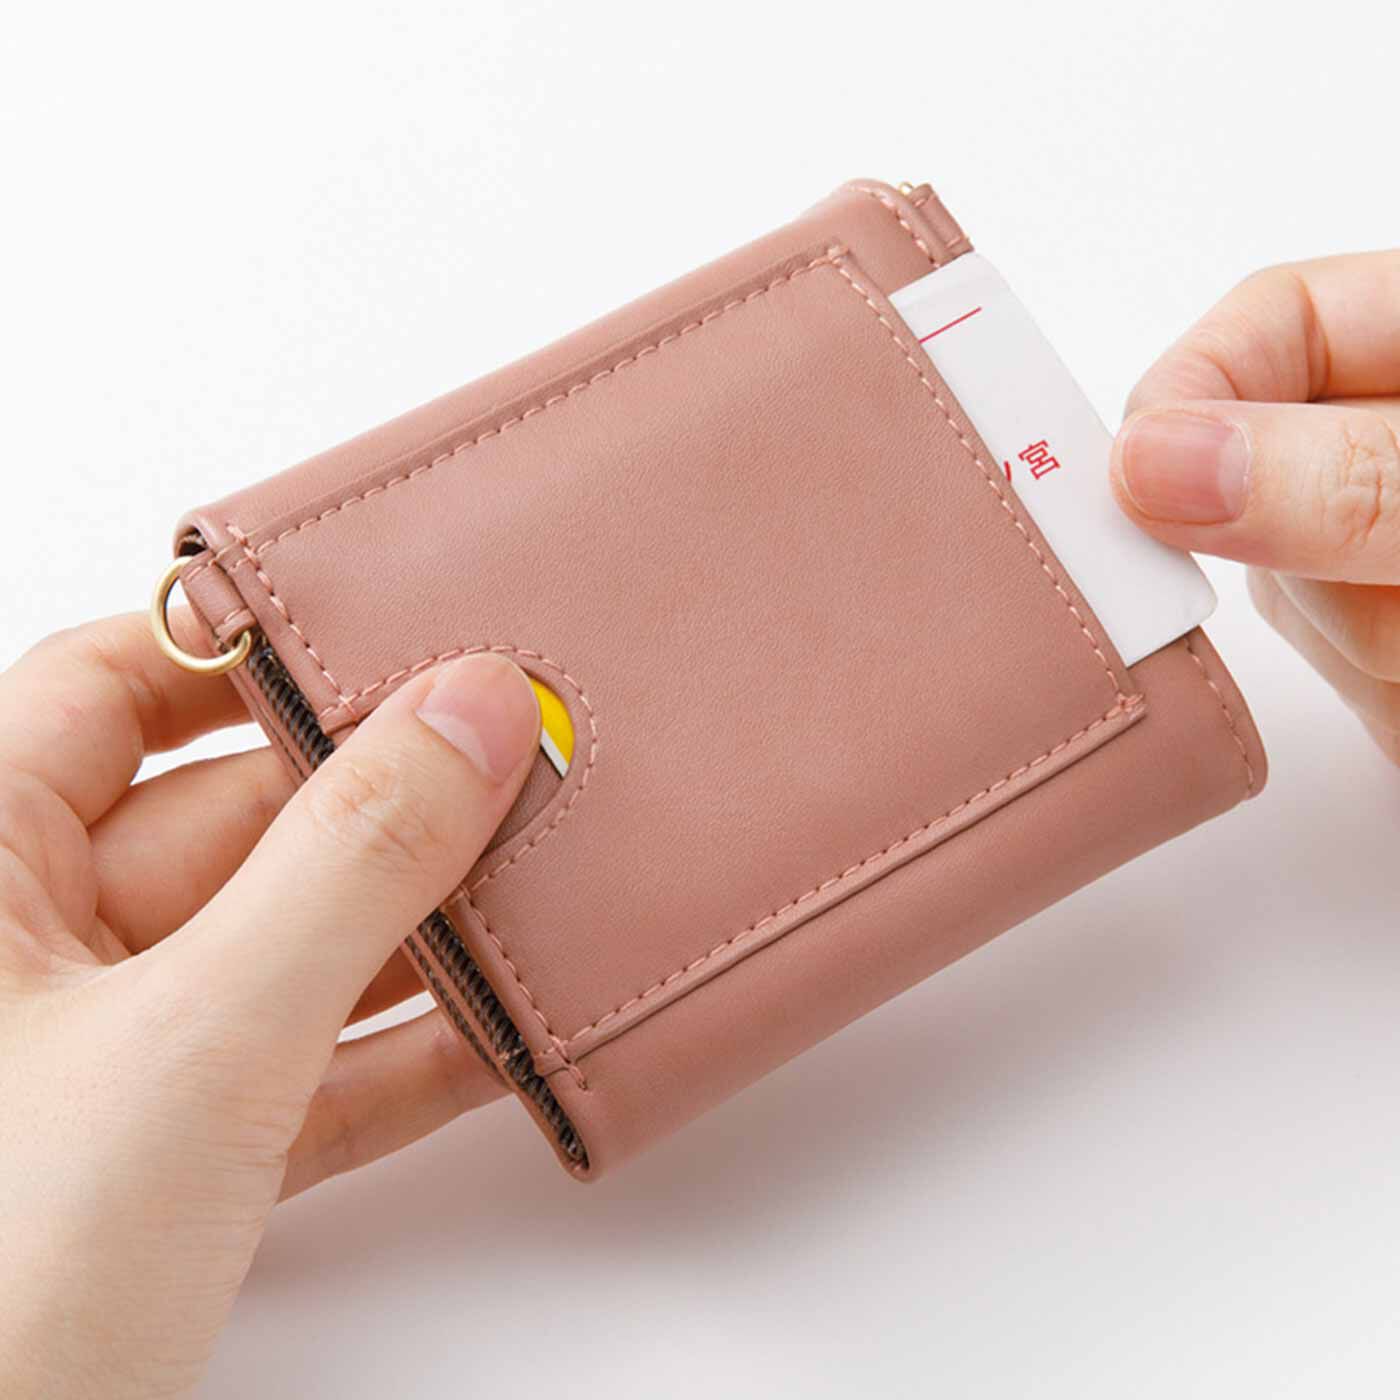 フェリシモの雑貨 Kraso|最小限を連れてって ラッキーカラーの三つ折り手のり財布の会|ICカードなどが入れられる外ポケット。